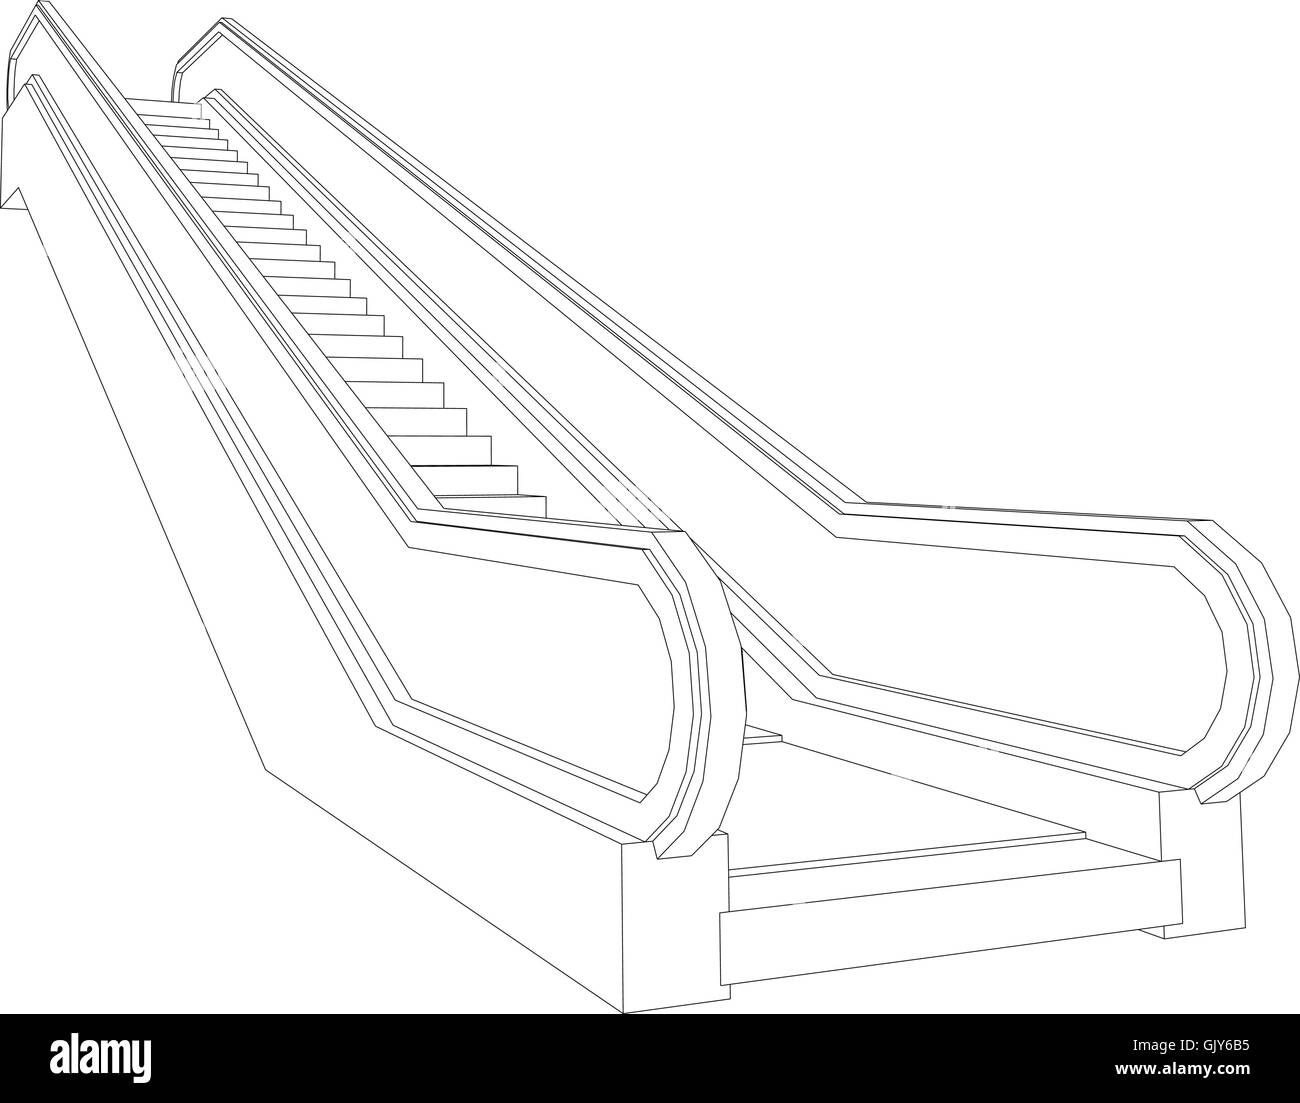 Zeichnung der Drahtrahmen Rolltreppe. Perspektivische Ansicht. Vektor-illustration Stock Vektor